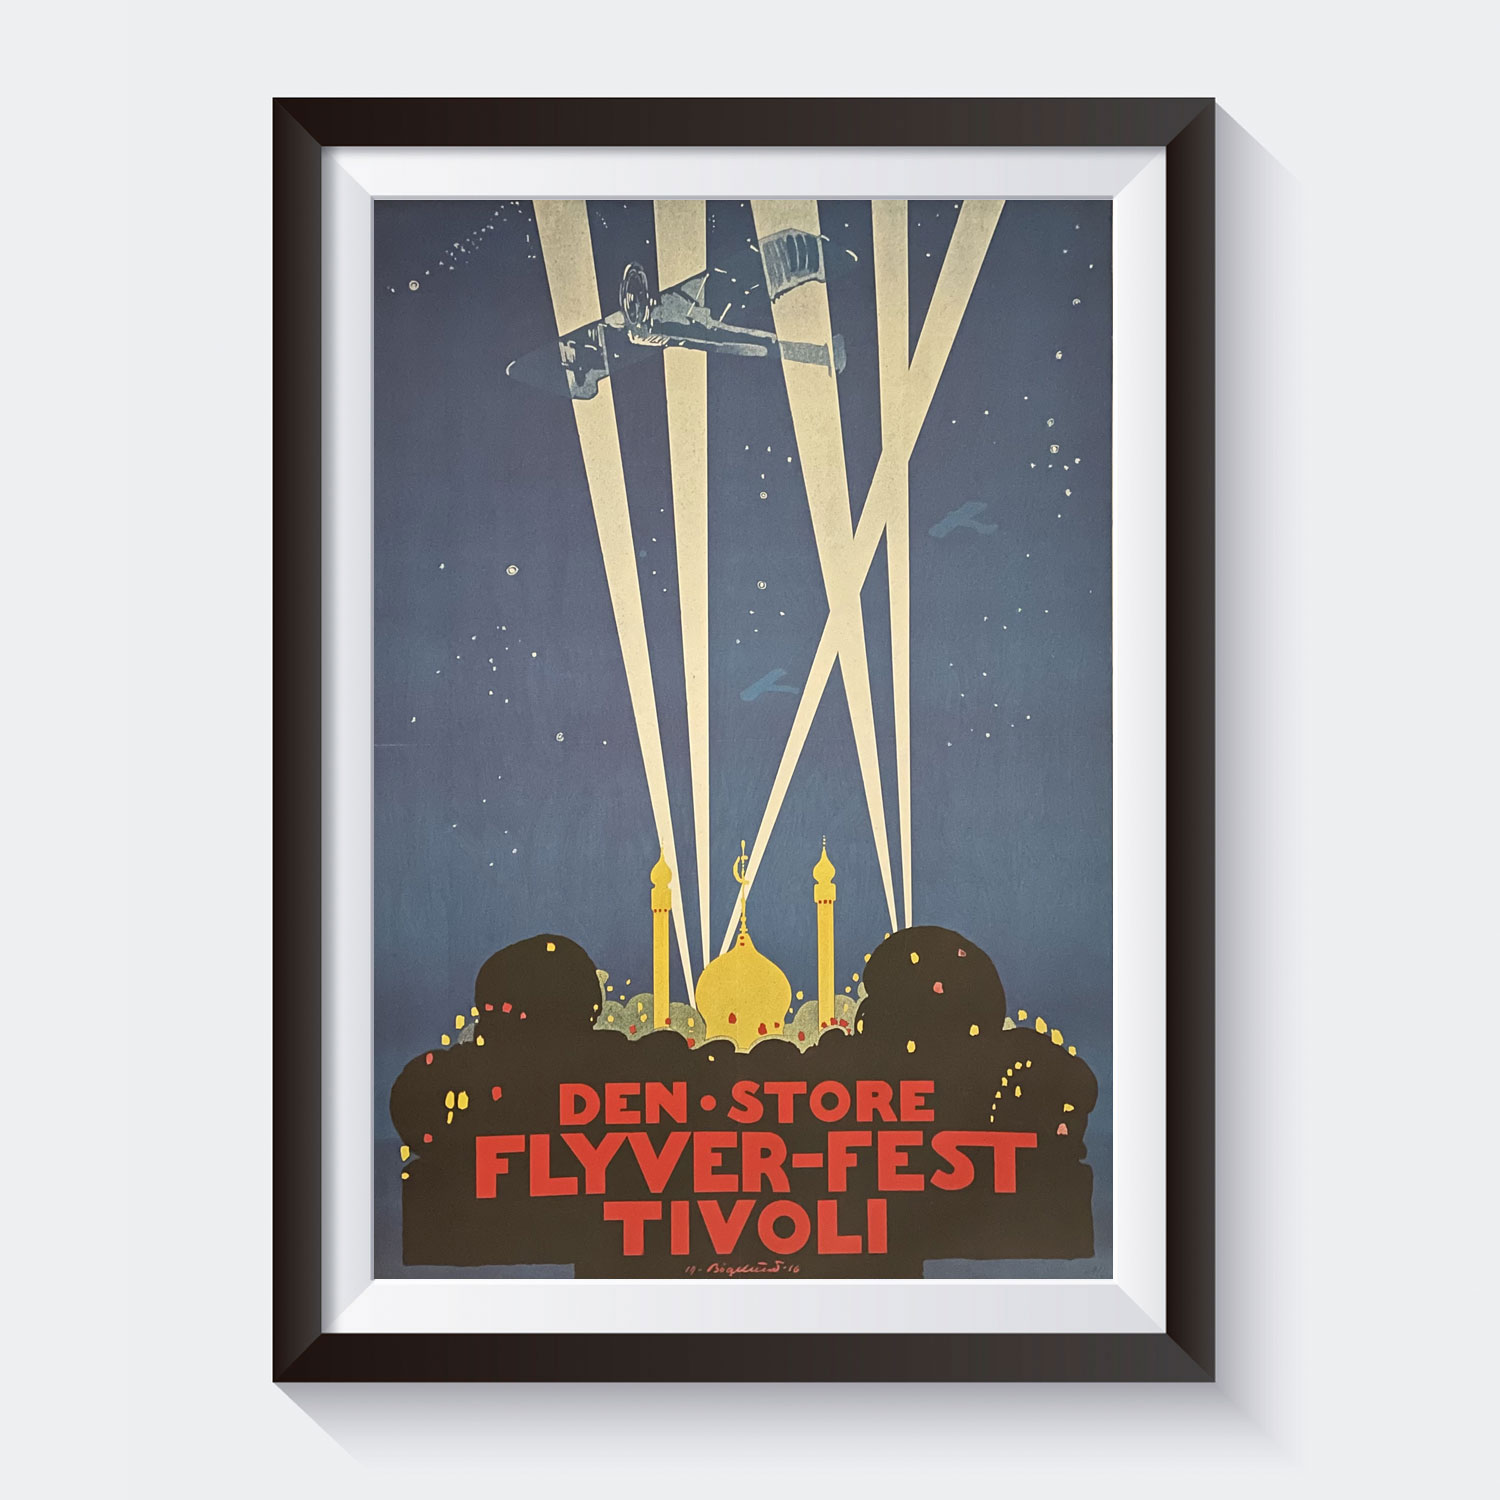 Tivoli - Den store flyverfest 1916 - Plakater, kort magneter - Little Tivoli